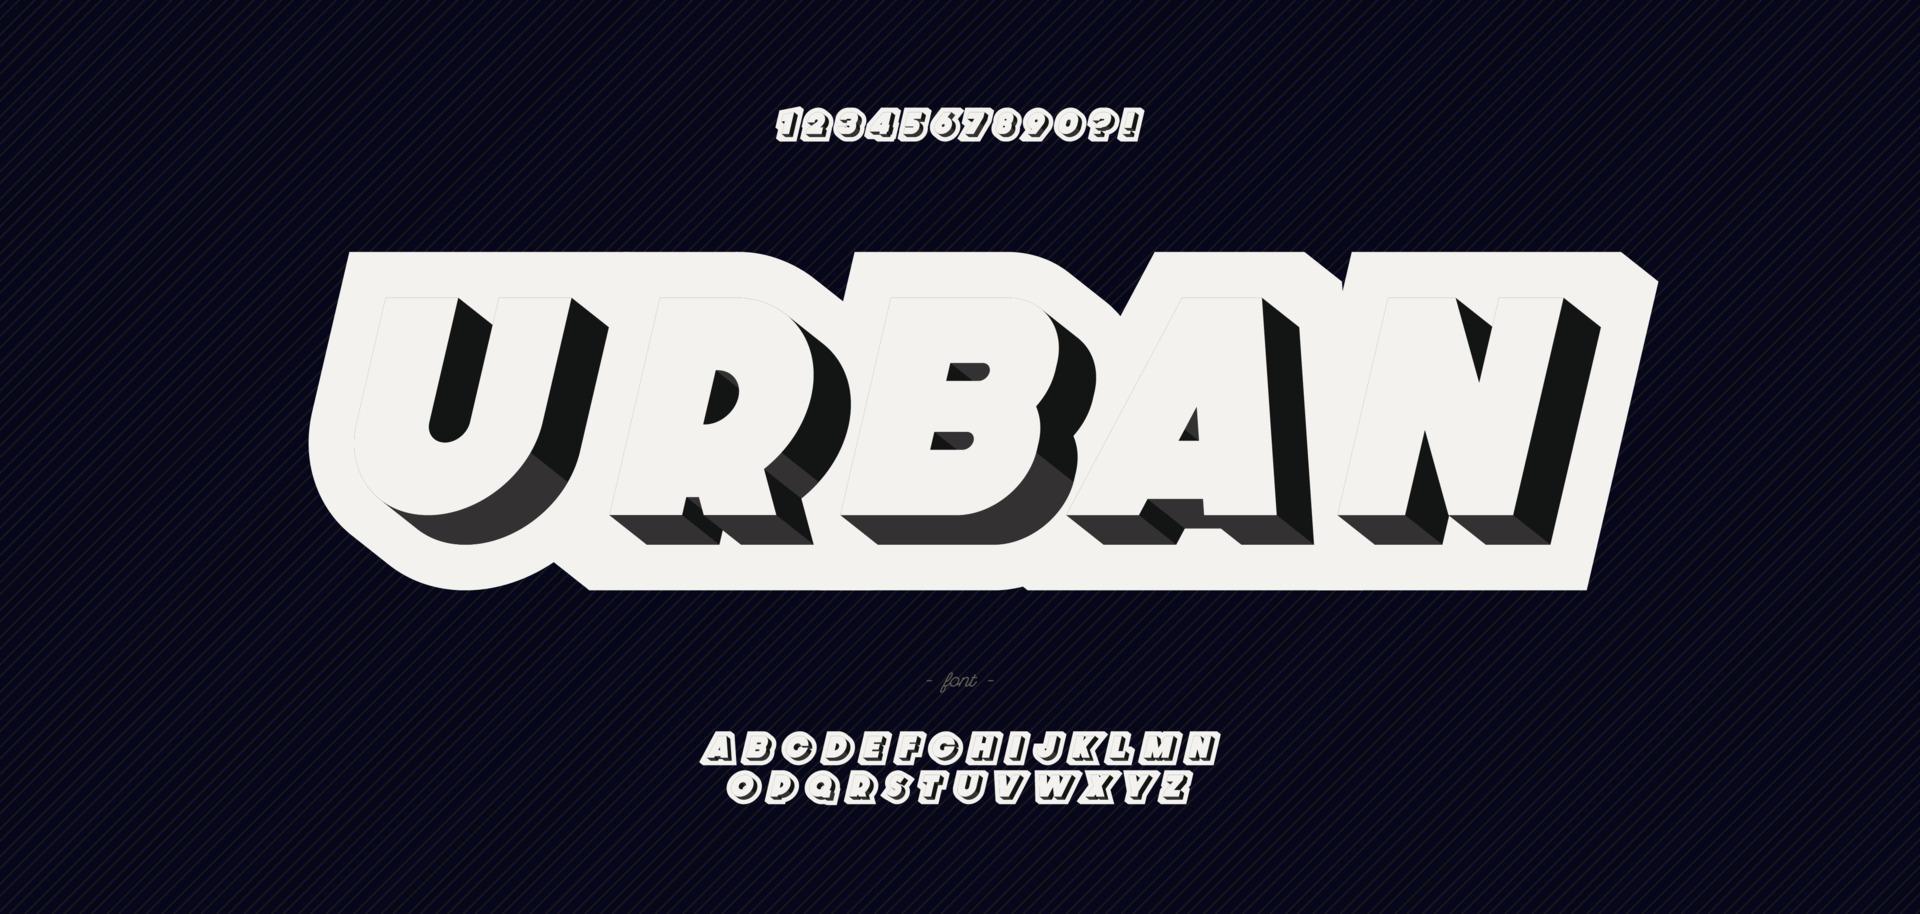 vector tipografia urbana 3d estilo em negrito